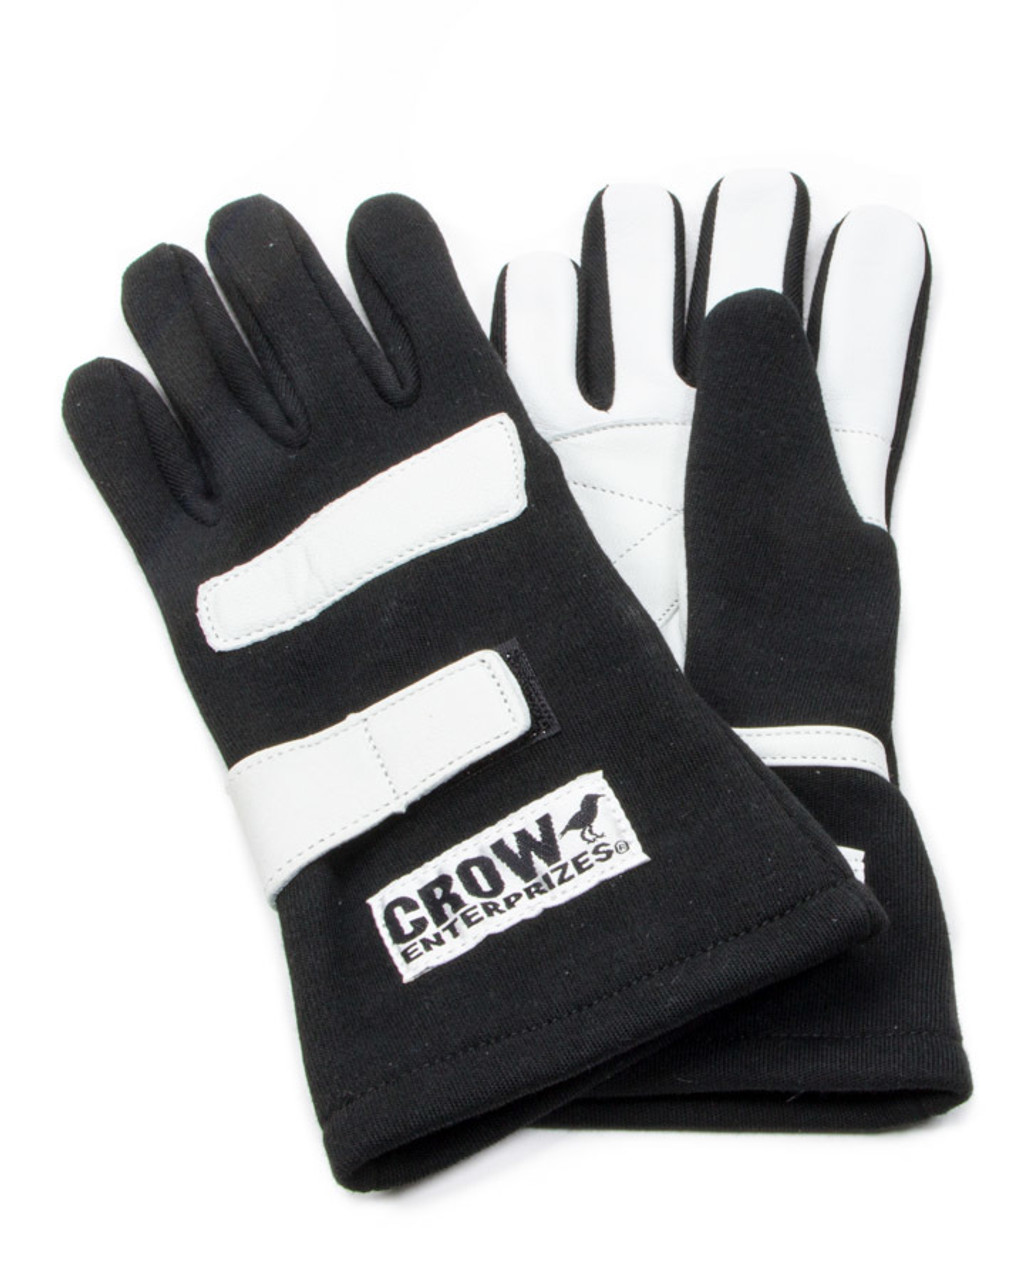 Gloves XL Black Nomex 2-Layer Standard CRW11734